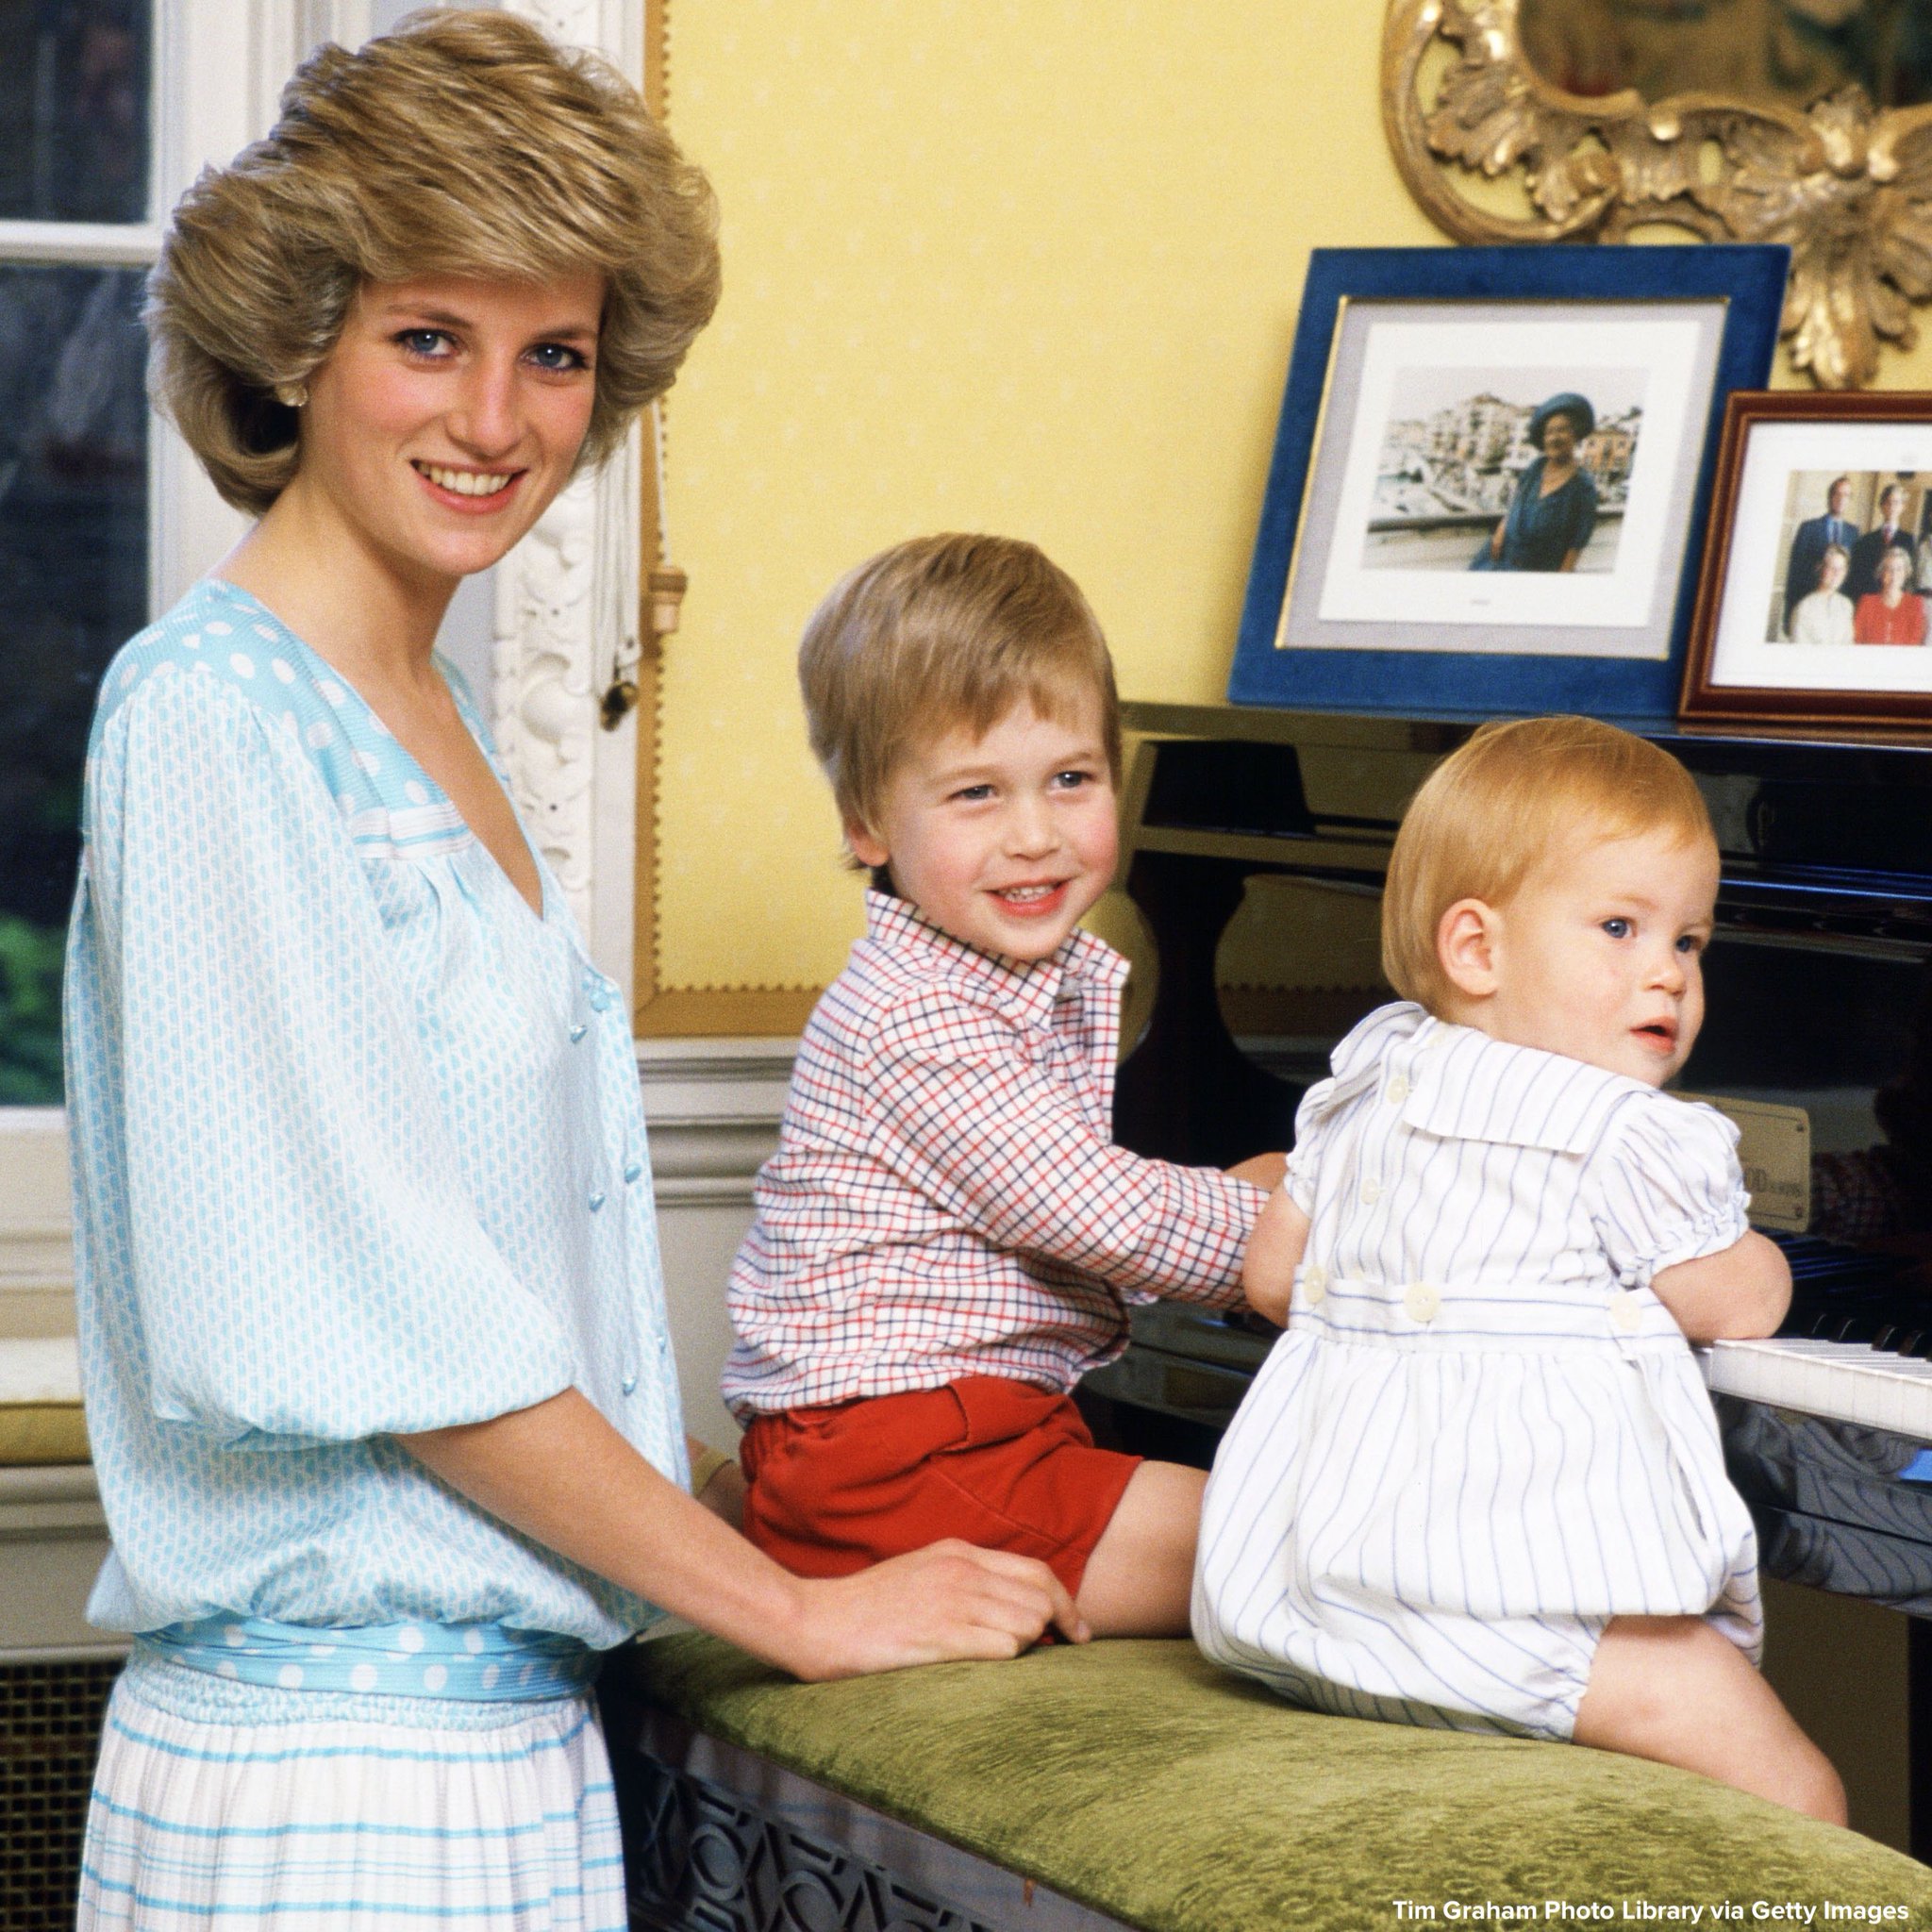 Detalii incendiare despre Prințesa Diana. Sarah, fiica secretă, și statuia recent amplasată